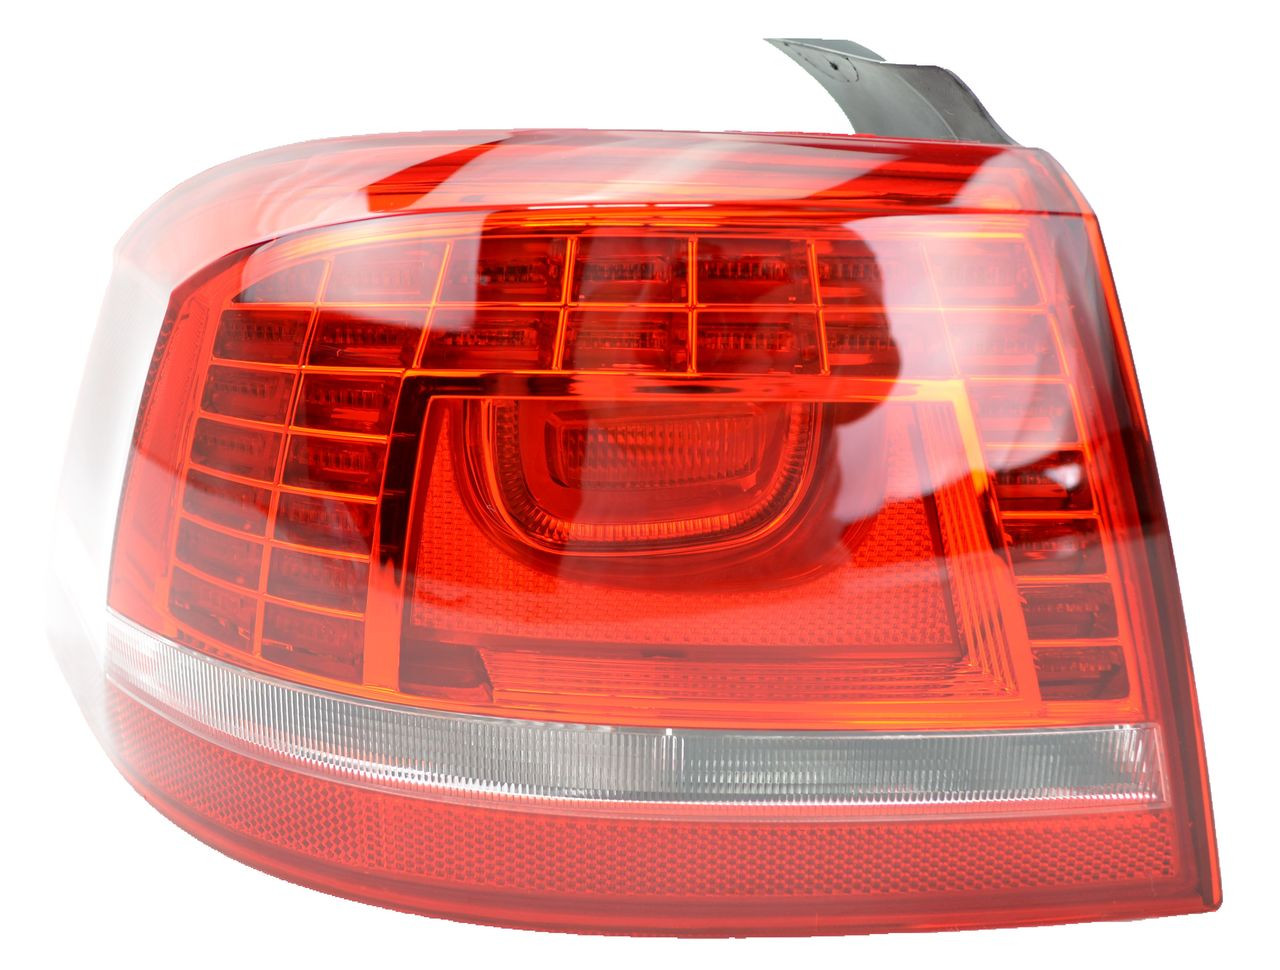 Tail Light for VW Passat B7/3C 09/10-12/14 New Left LHS Rear Lamp LED Sedan 11 12 13